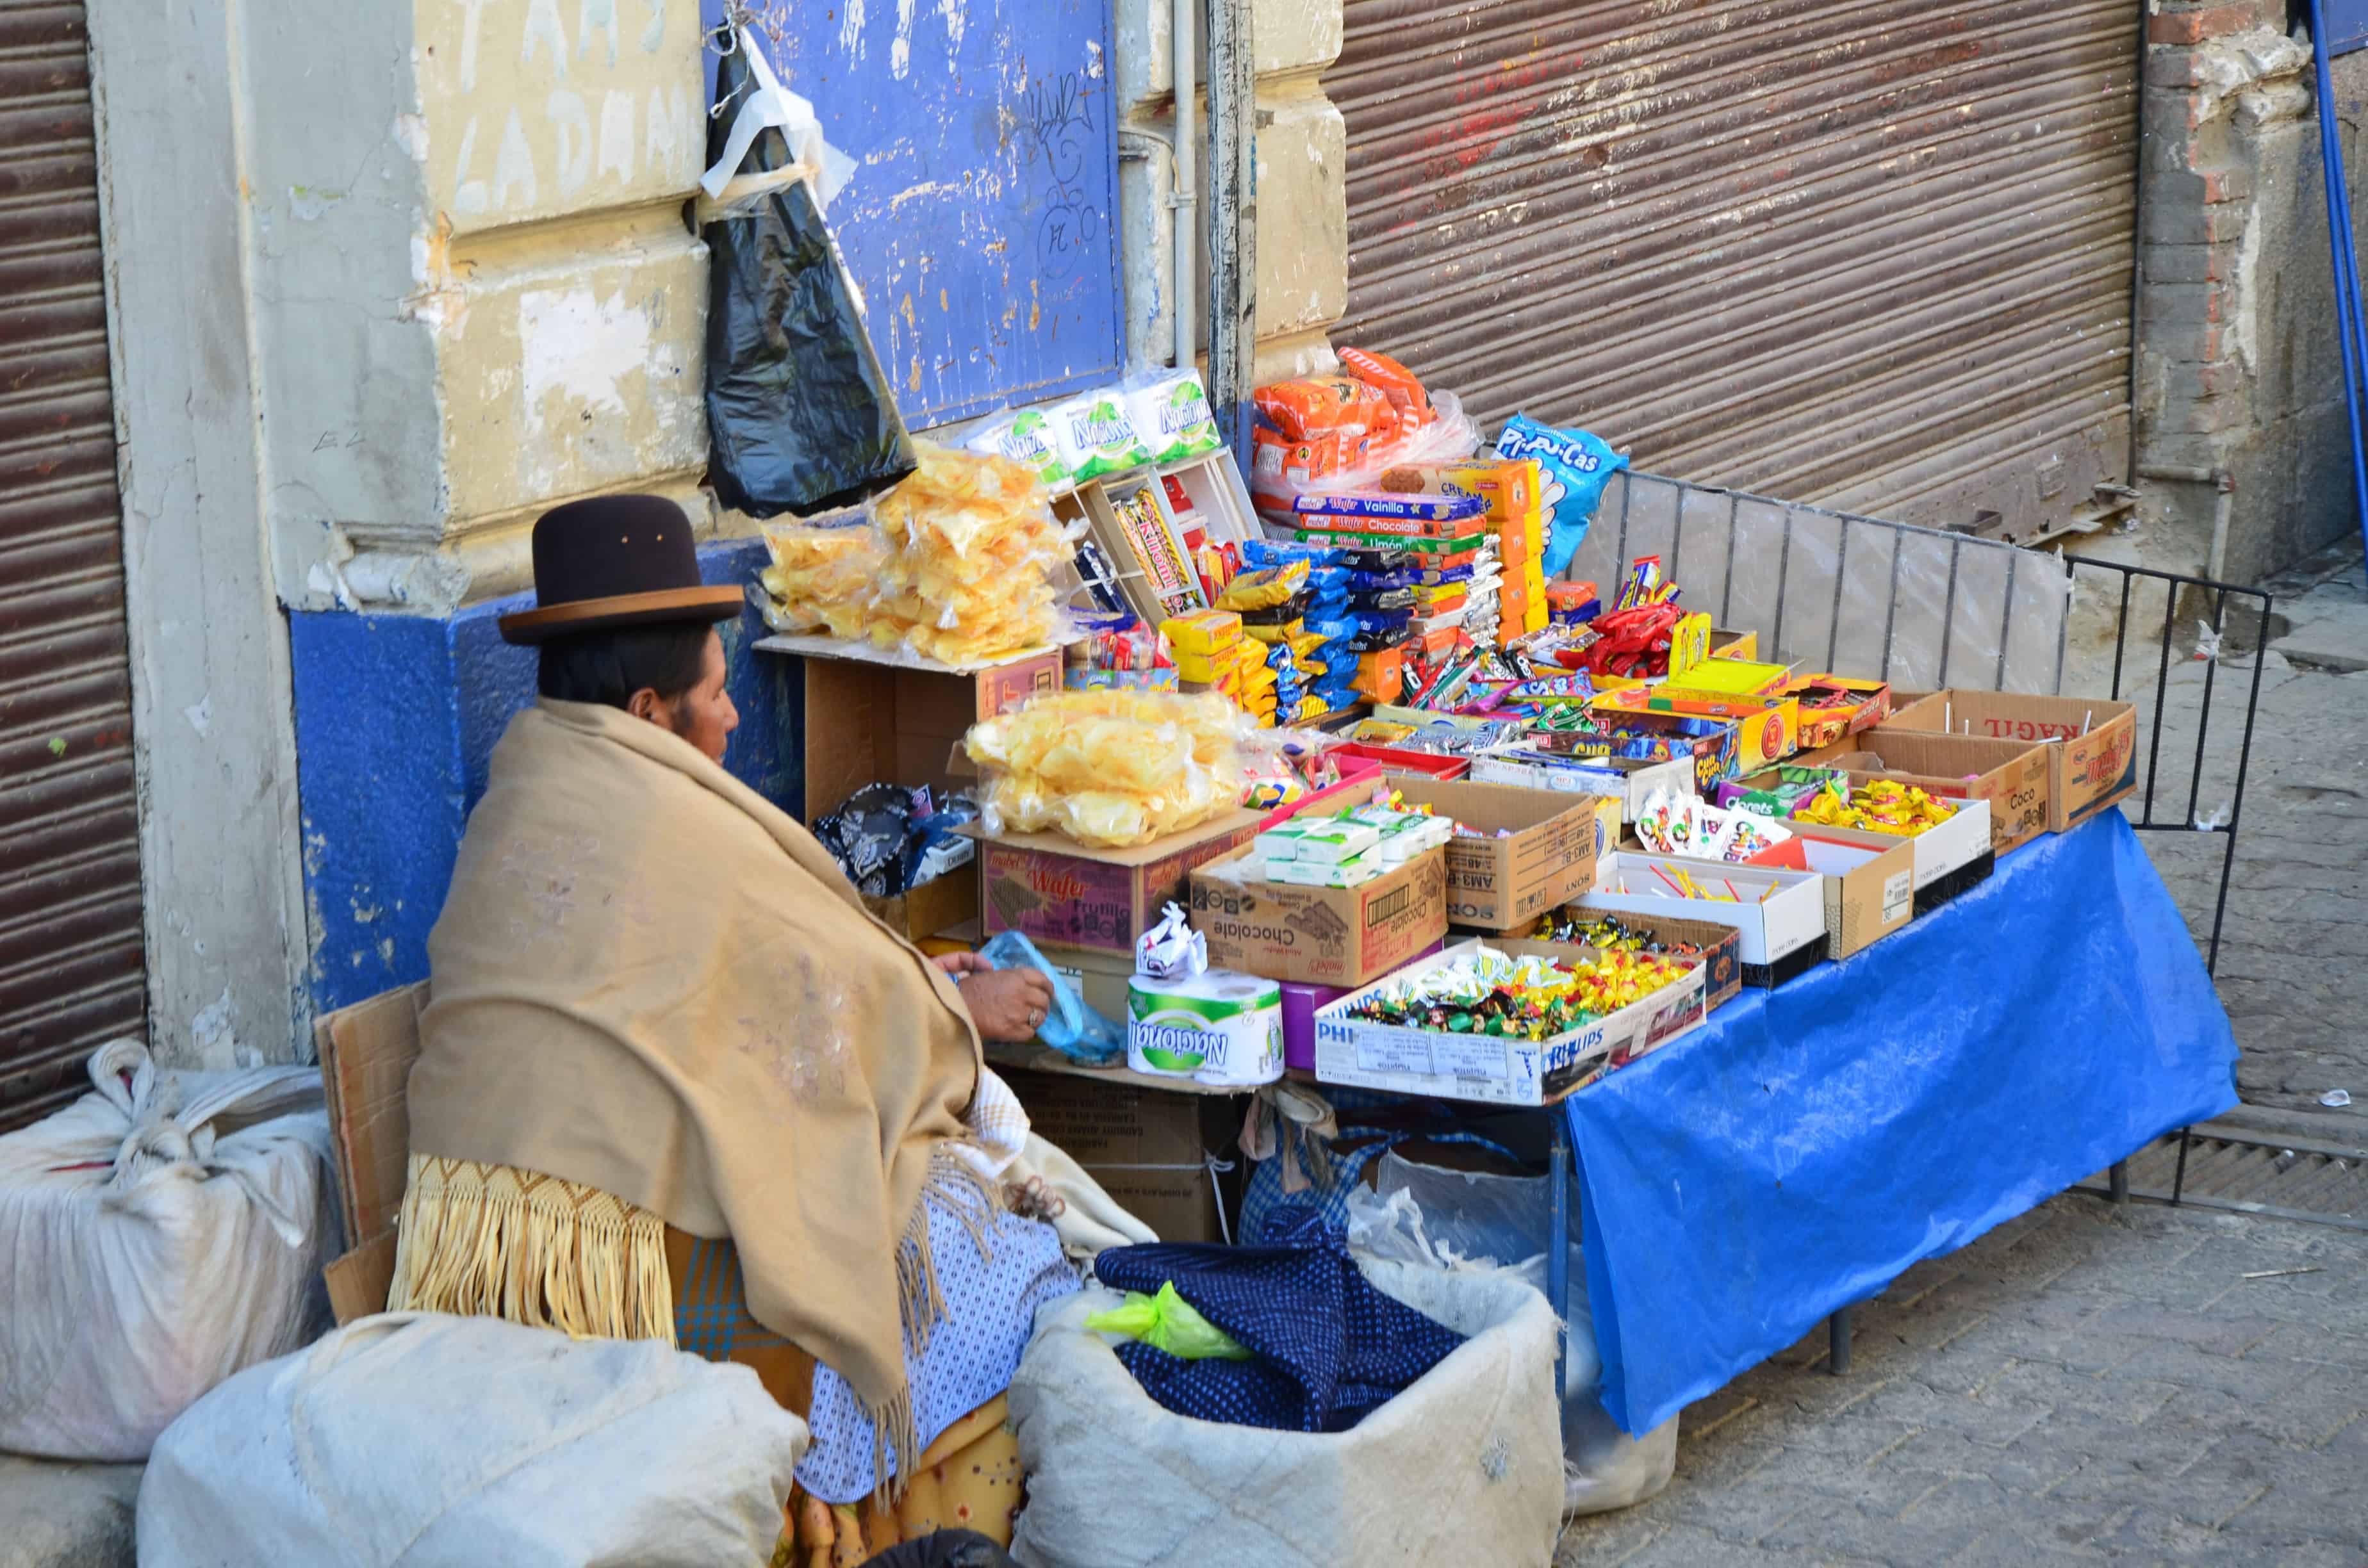 Calle Comercio in La Paz, Bolivia